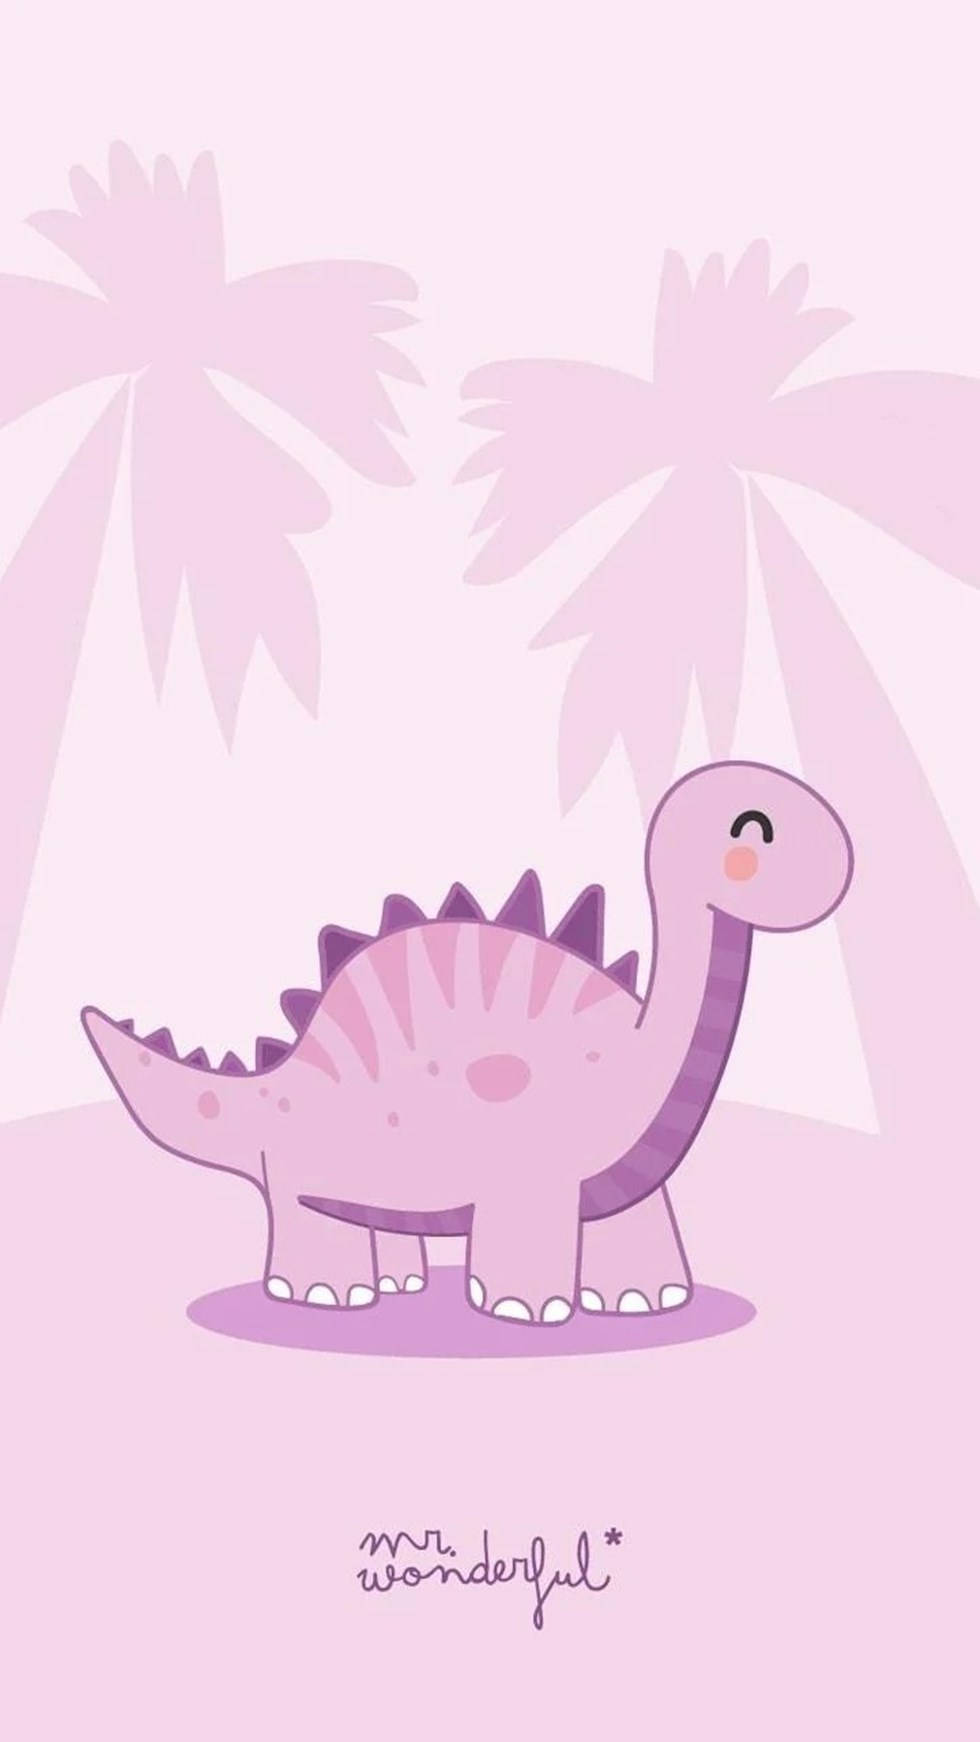 Bạn yêu thích những con khủng long dễ thương và muốn sở hữu một hình nền Iphone đẹp nhất? Chúng tôi có thể giúp bạn. Bộ sưu tập của chúng tôi đầy đủ những hình ảnh đáng yêu, sáng tạo và độc đáo nhất về Khủng long xinh xắn cho bạn chọn lựa. Hãy ghé thăm trang web của chúng tôi ngay!